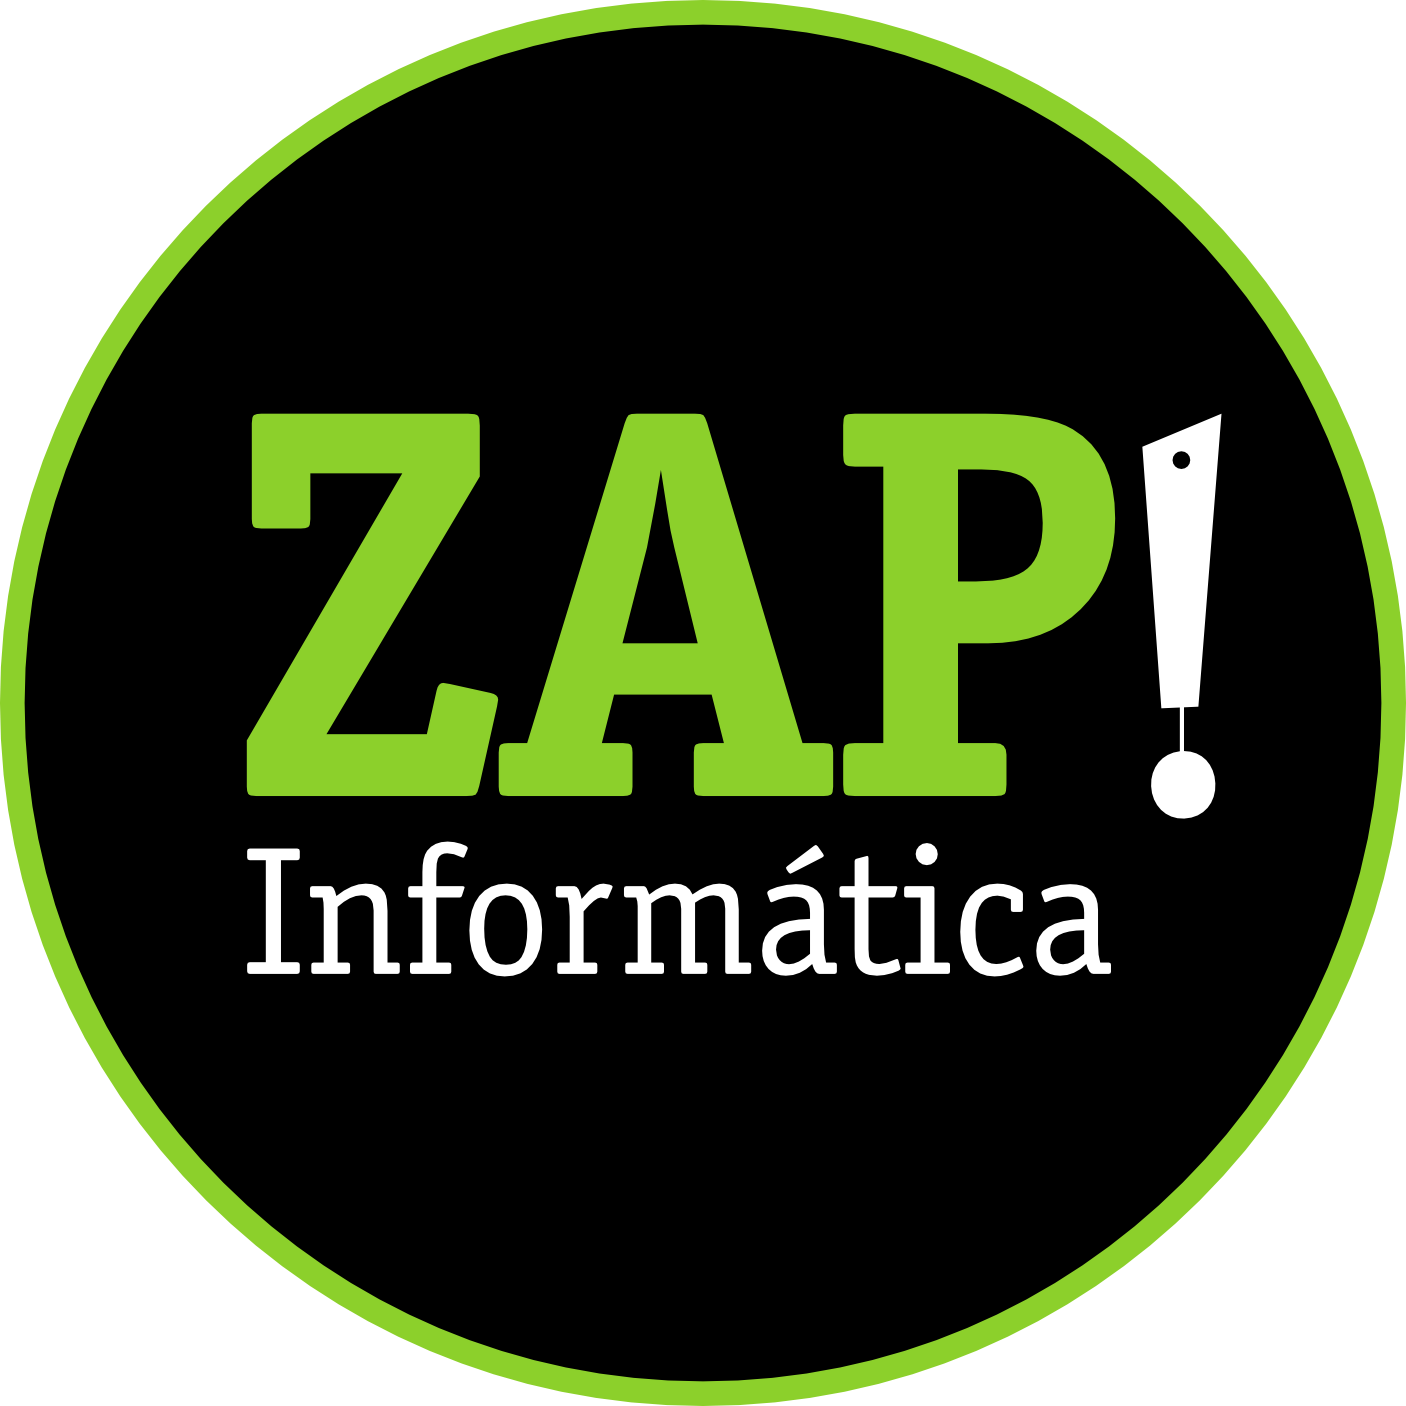 ZAP INFORMATICA - Informática - Empresas - Brasília, DF